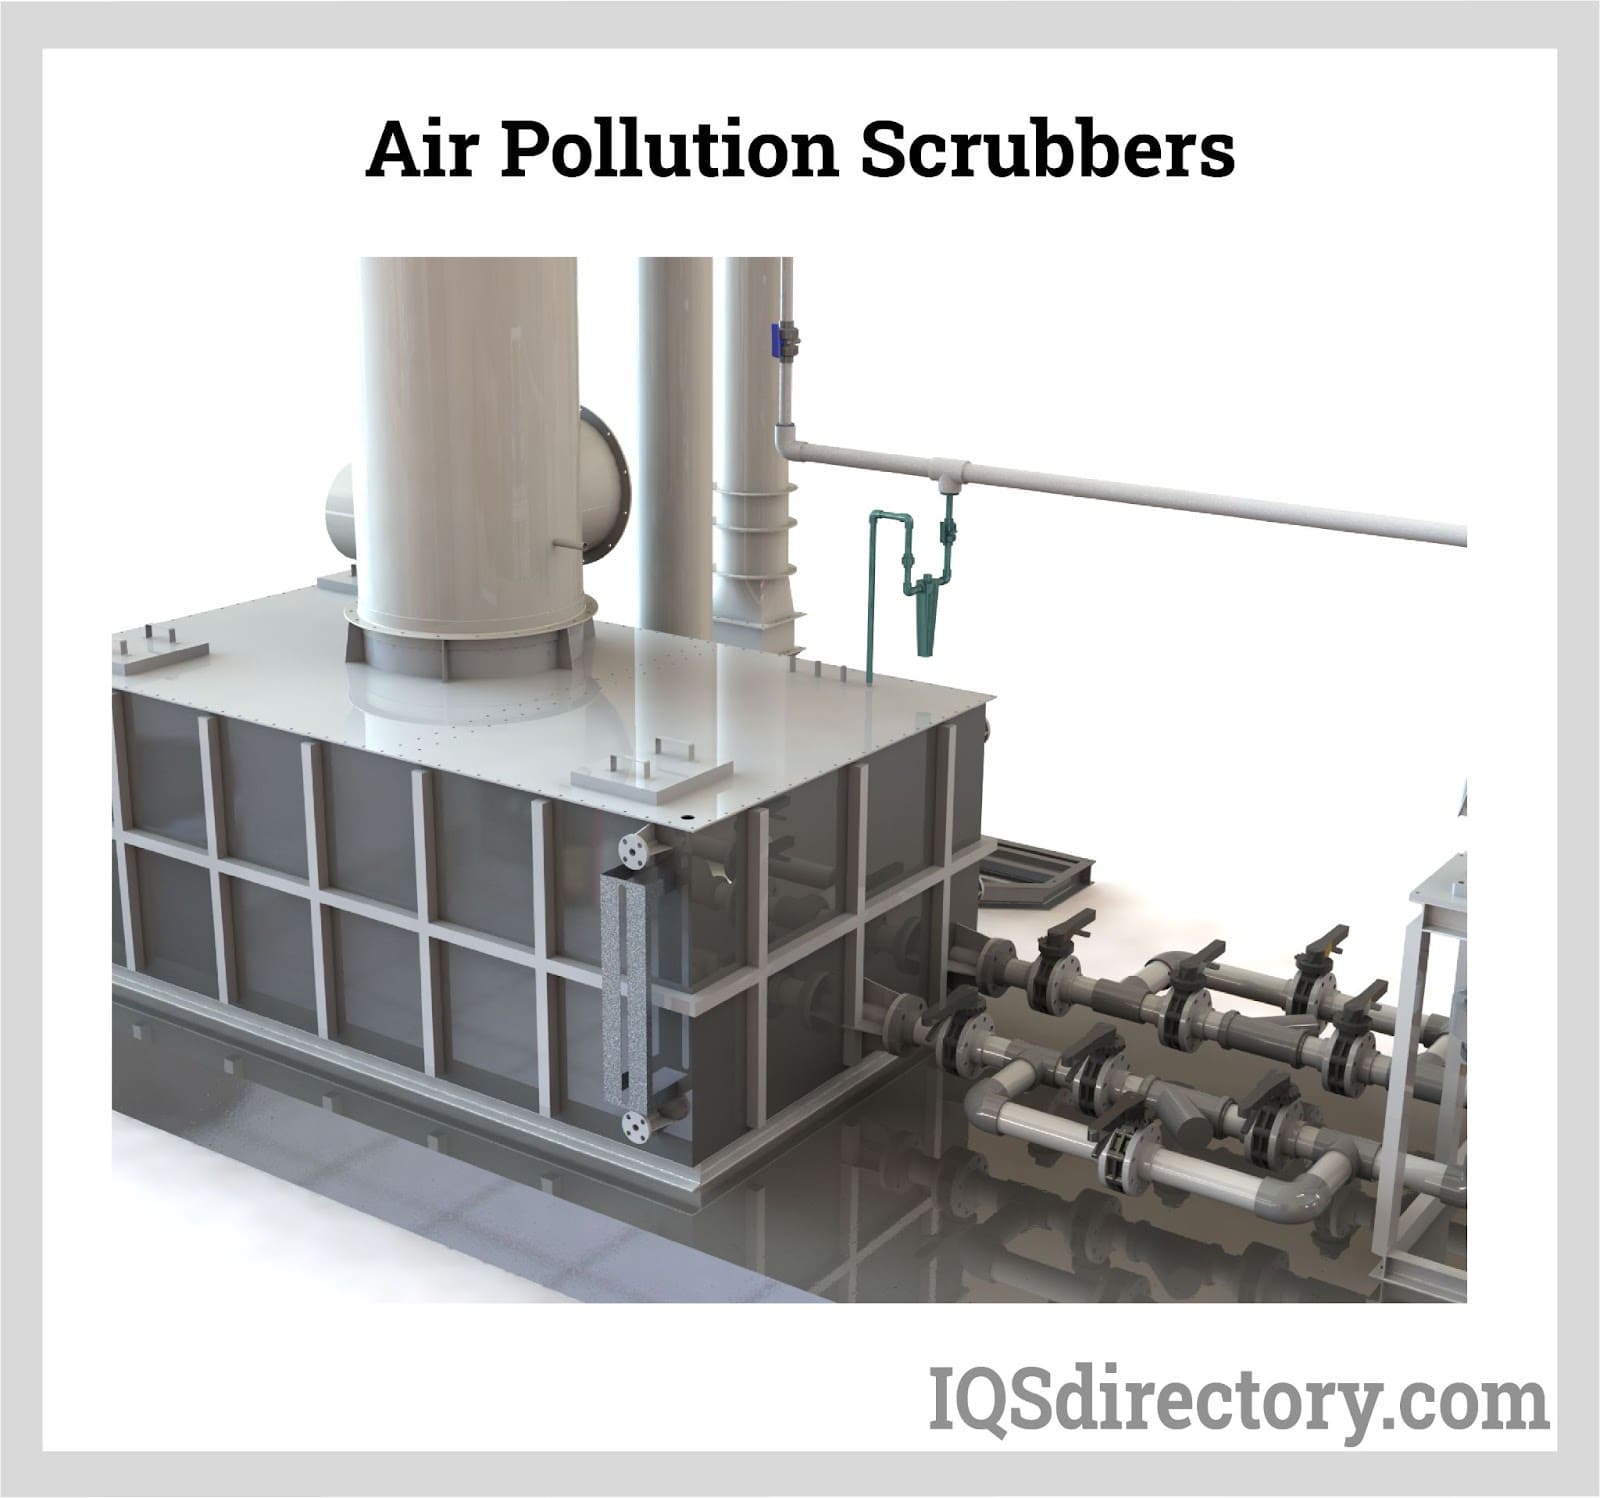 Air Pollution Scrubbers